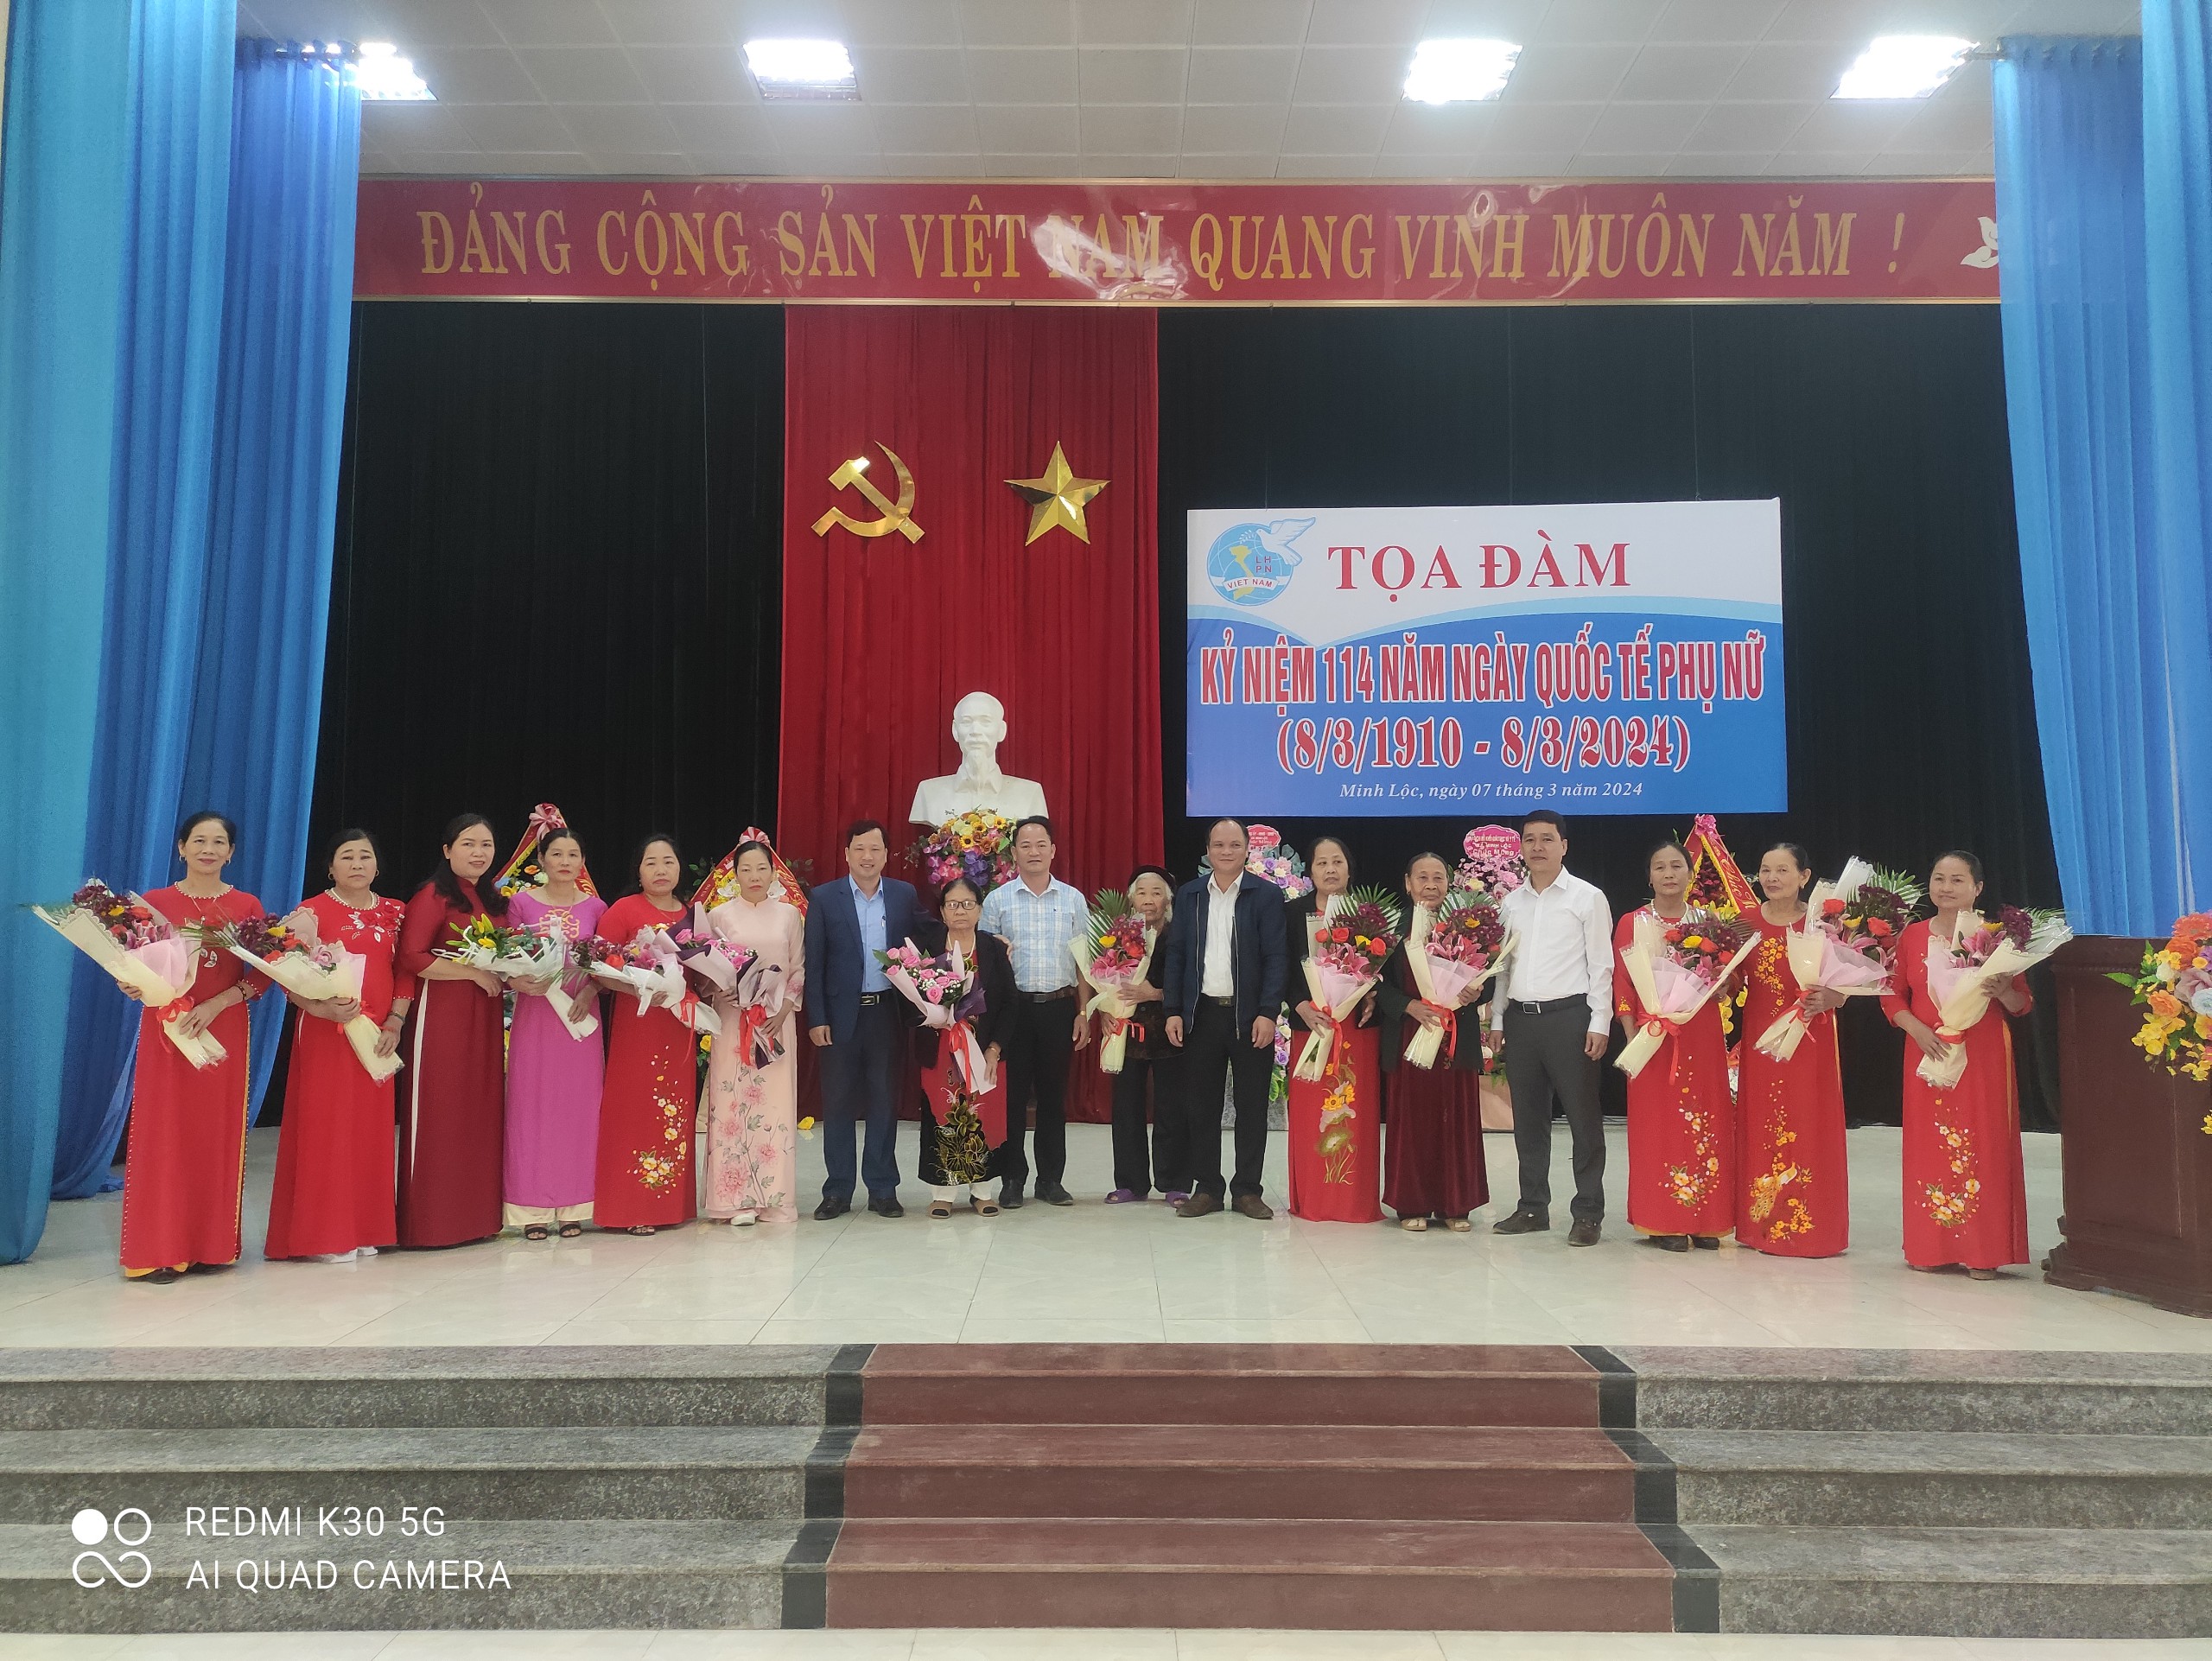 Hội Liên hiệp Phụ nữ xã Minh Lộc tổ chức tọa đàm kỷ niệm 114 năm ngày Quốc tế phụ nữ (08/3/1910 - 08/3/2024)